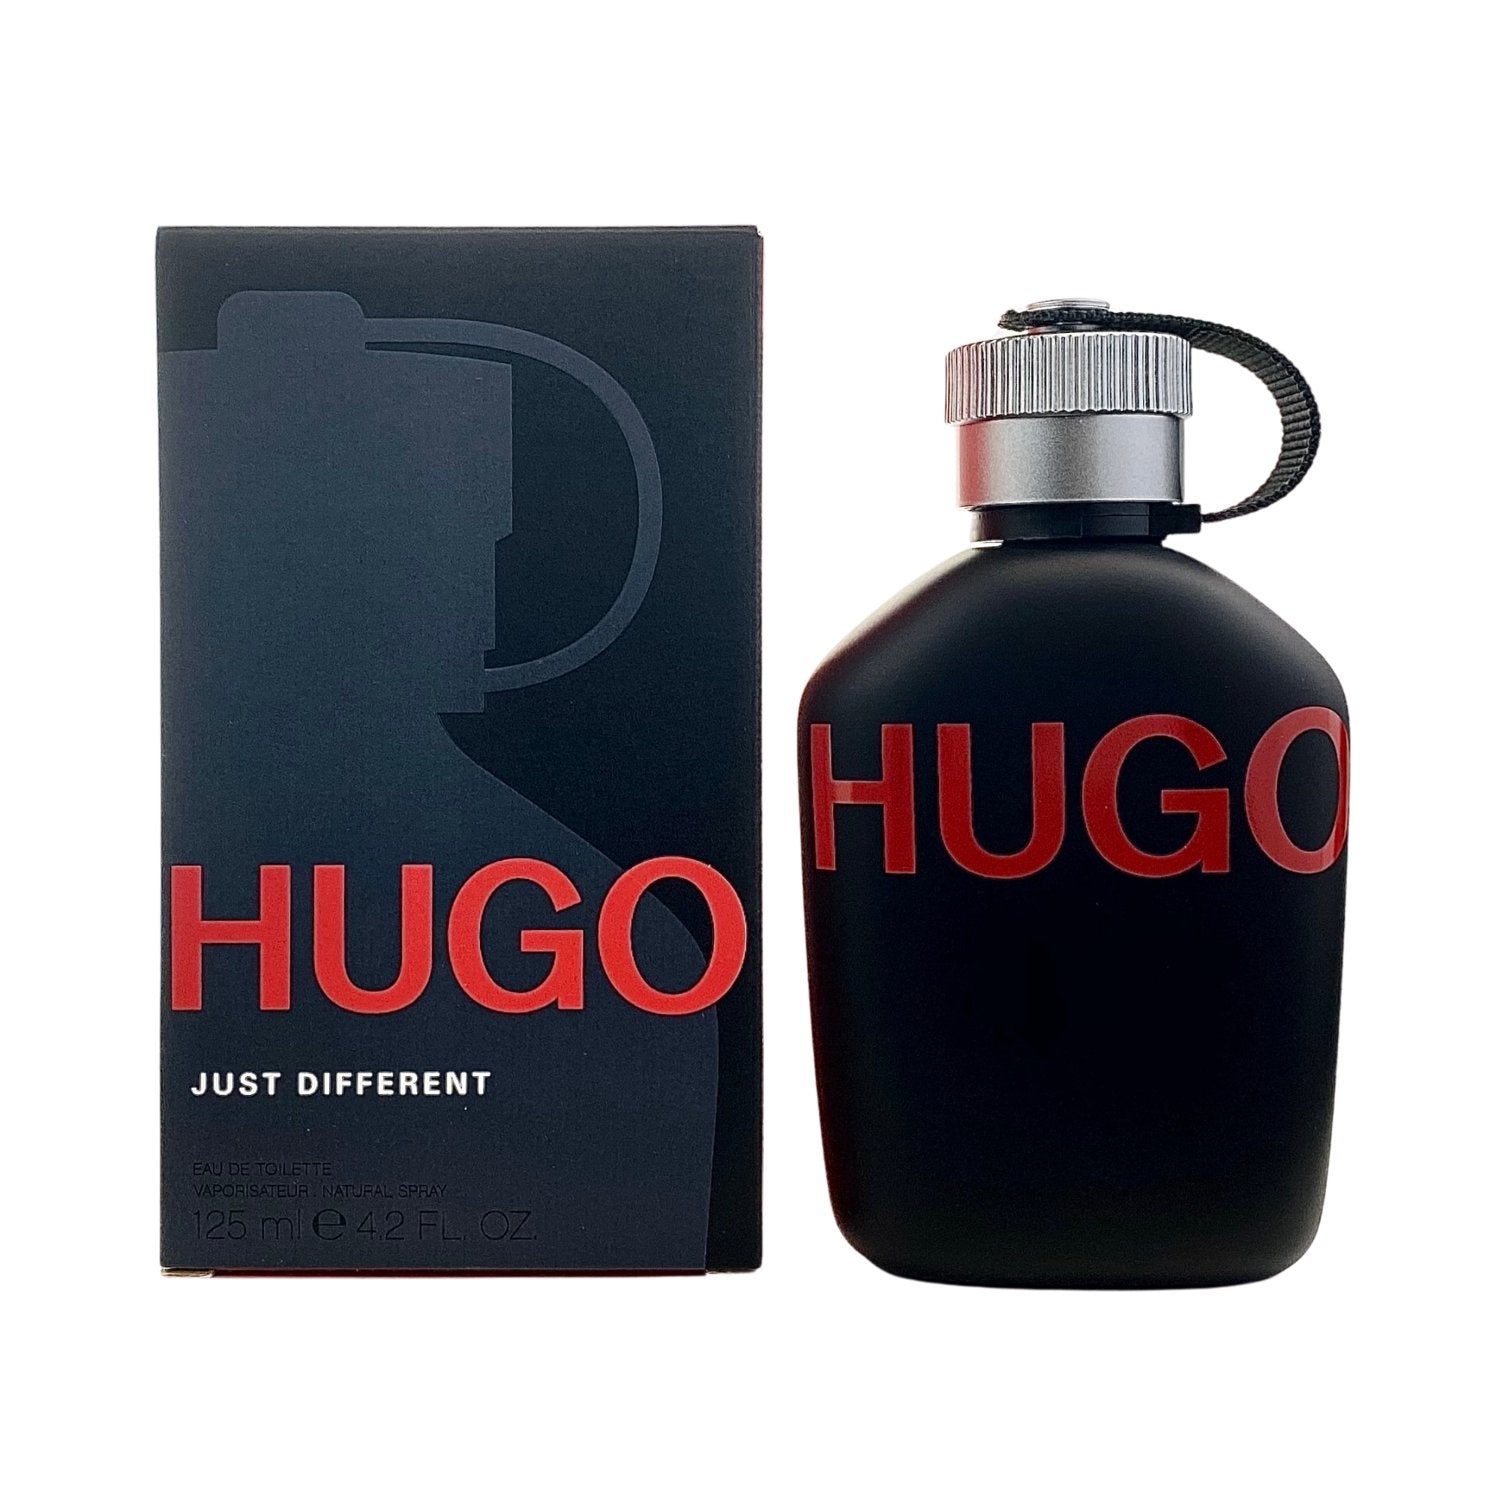 Hugo Just Different by Hugo Boss 4.2 oz EDT Spray for Men